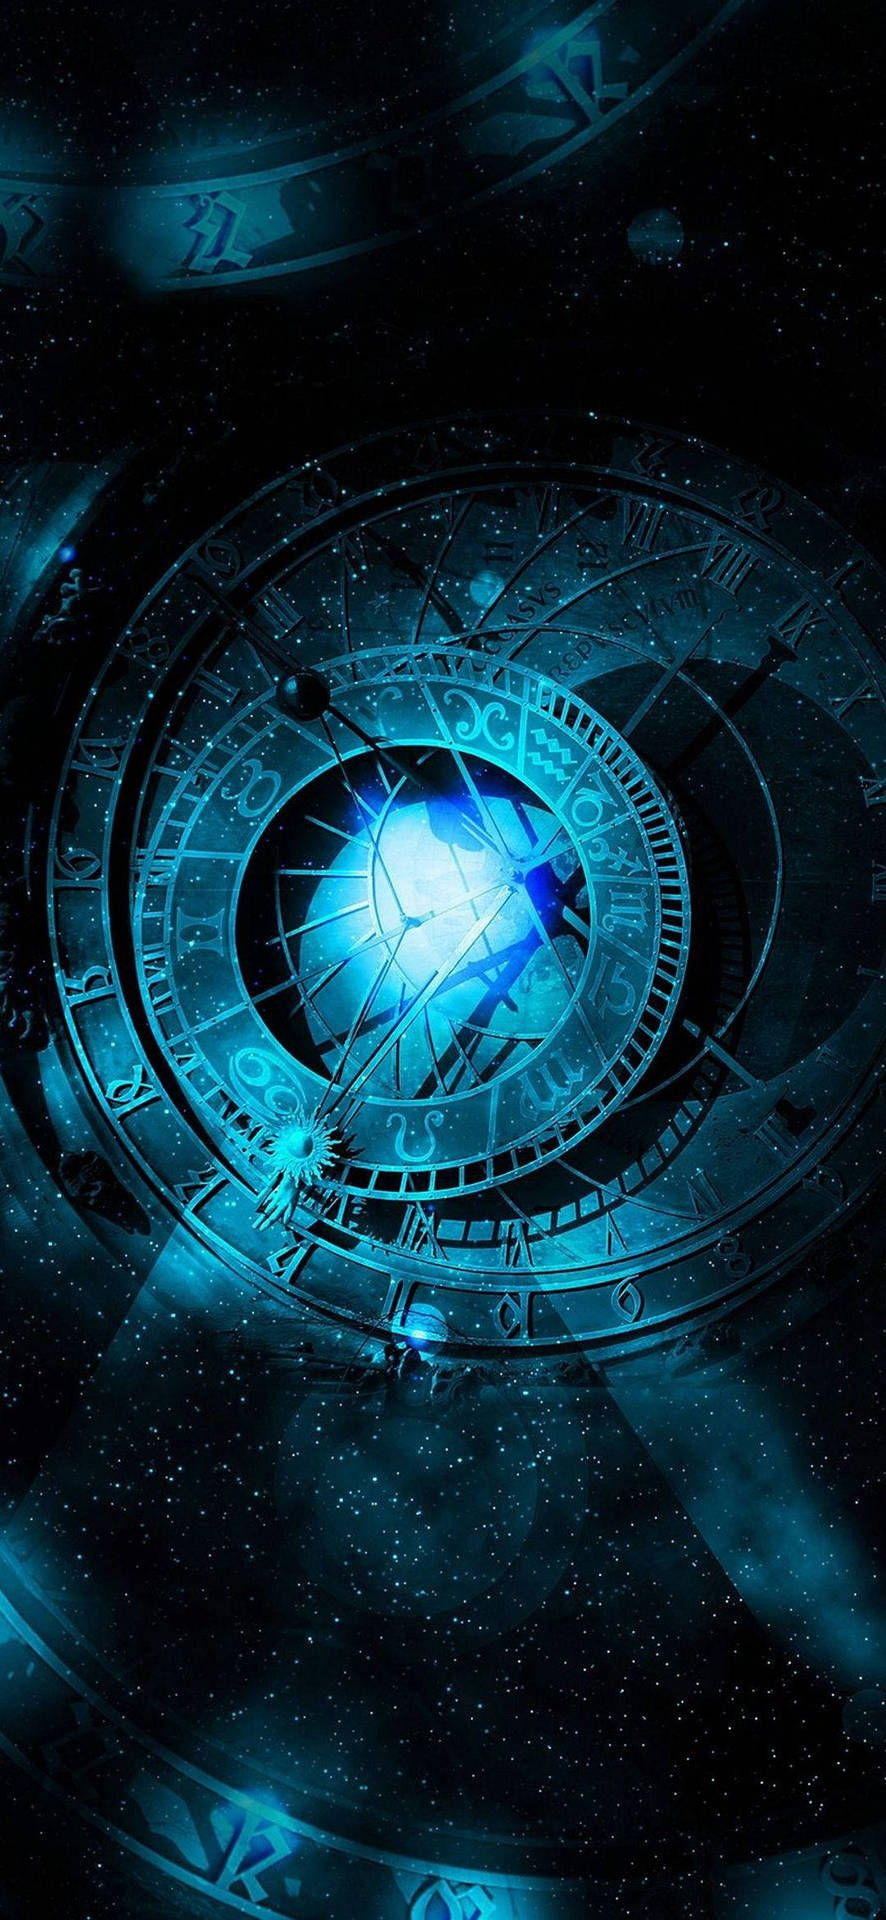 Mystical Astrological Compass Wallpaper